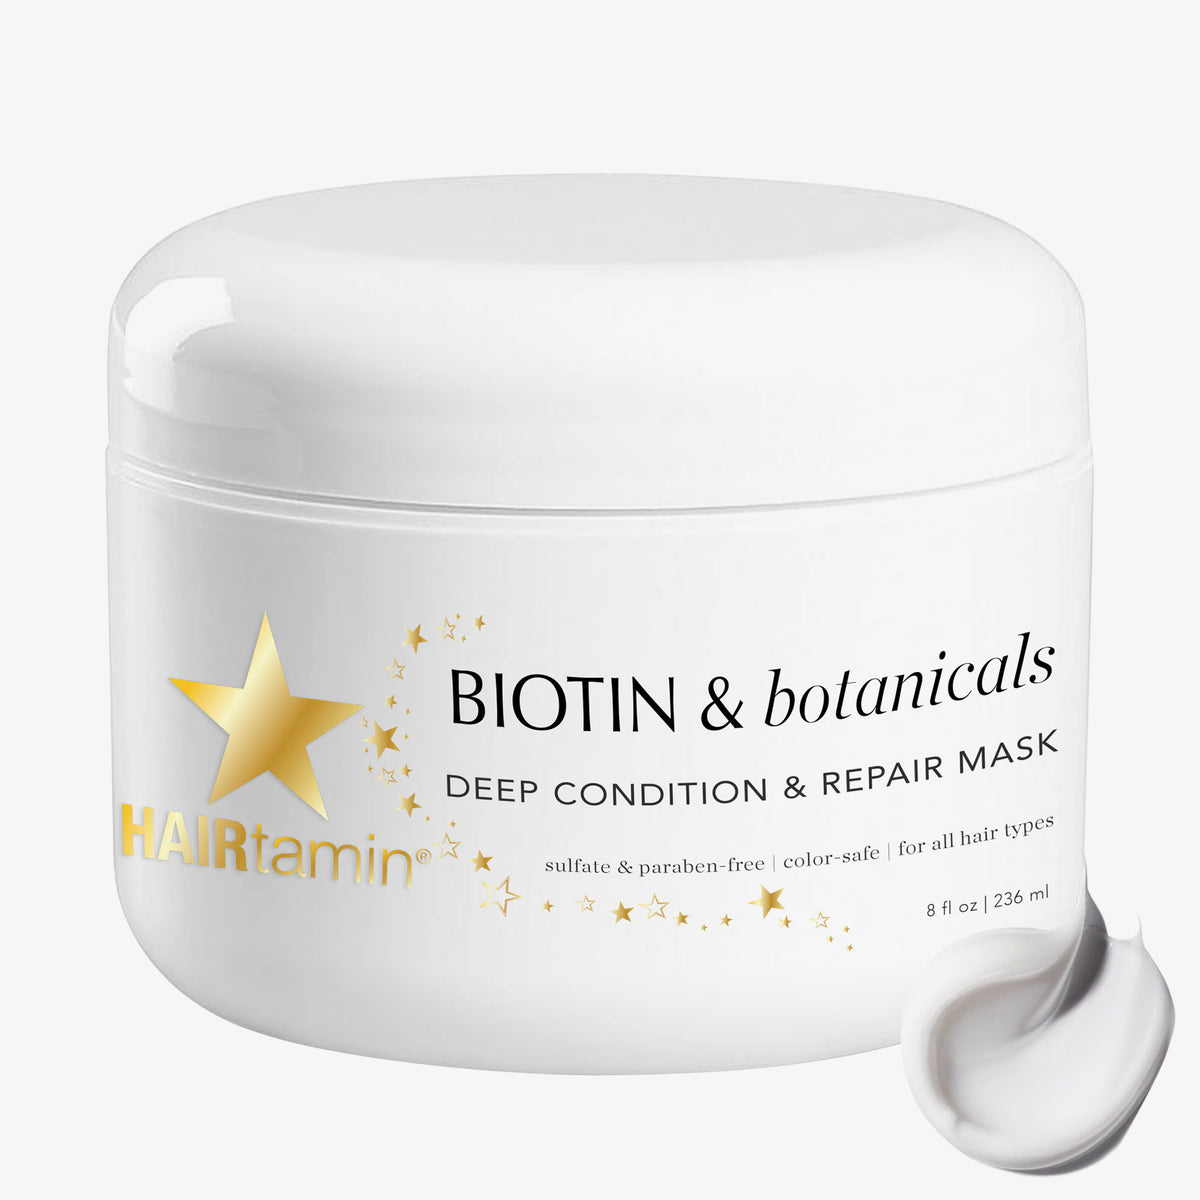 1x HAIRtamin Biotin & Botanicals Deep Condition & Repair Haarmaske mit einem Klecks Haarmaske.